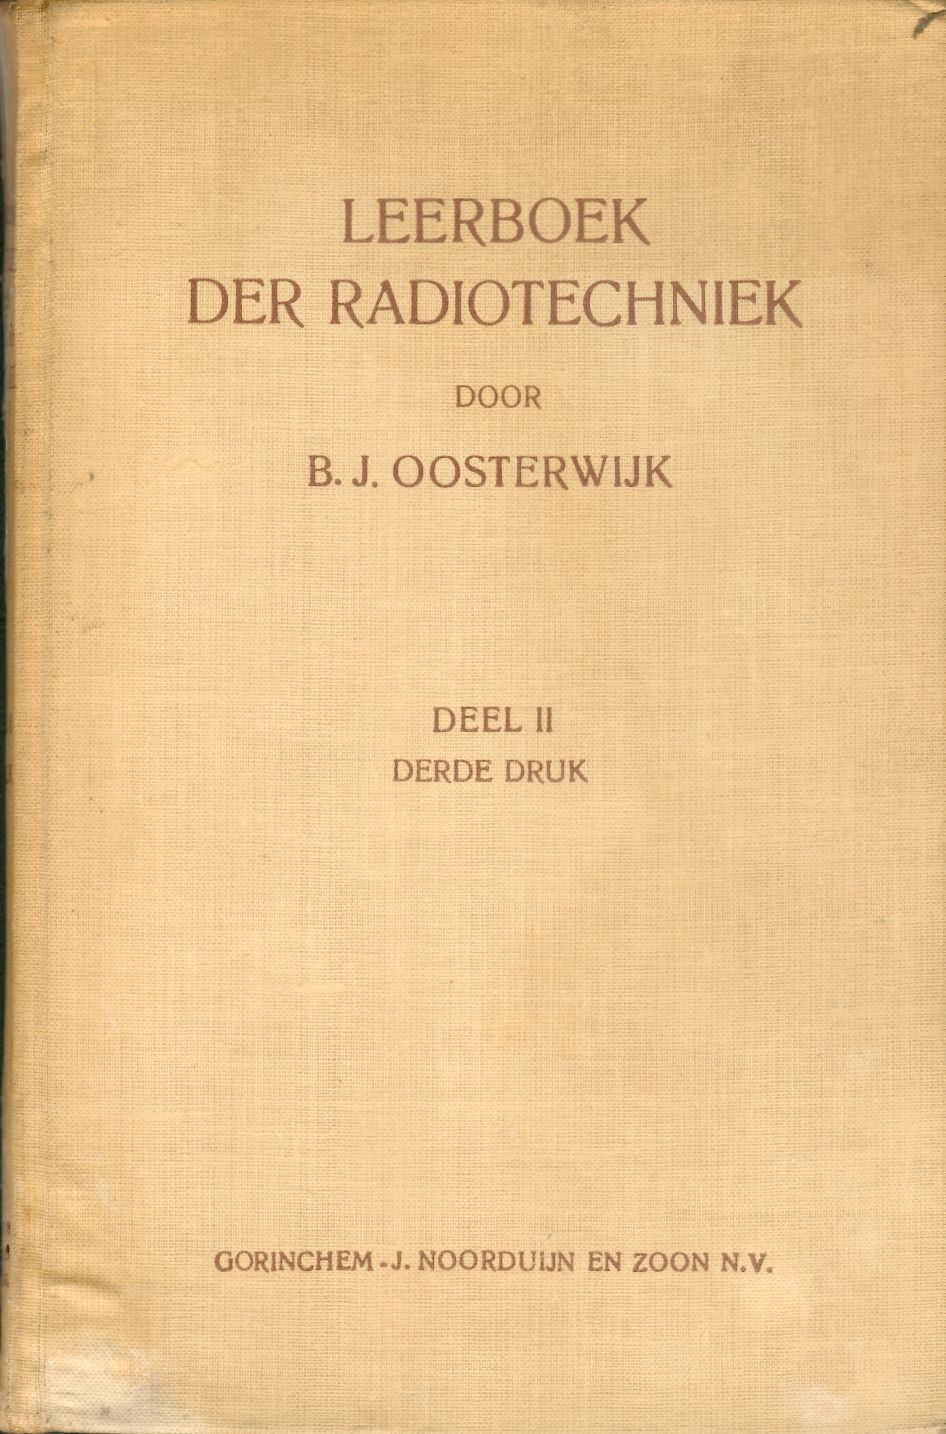 Leerboek der radiotechniek